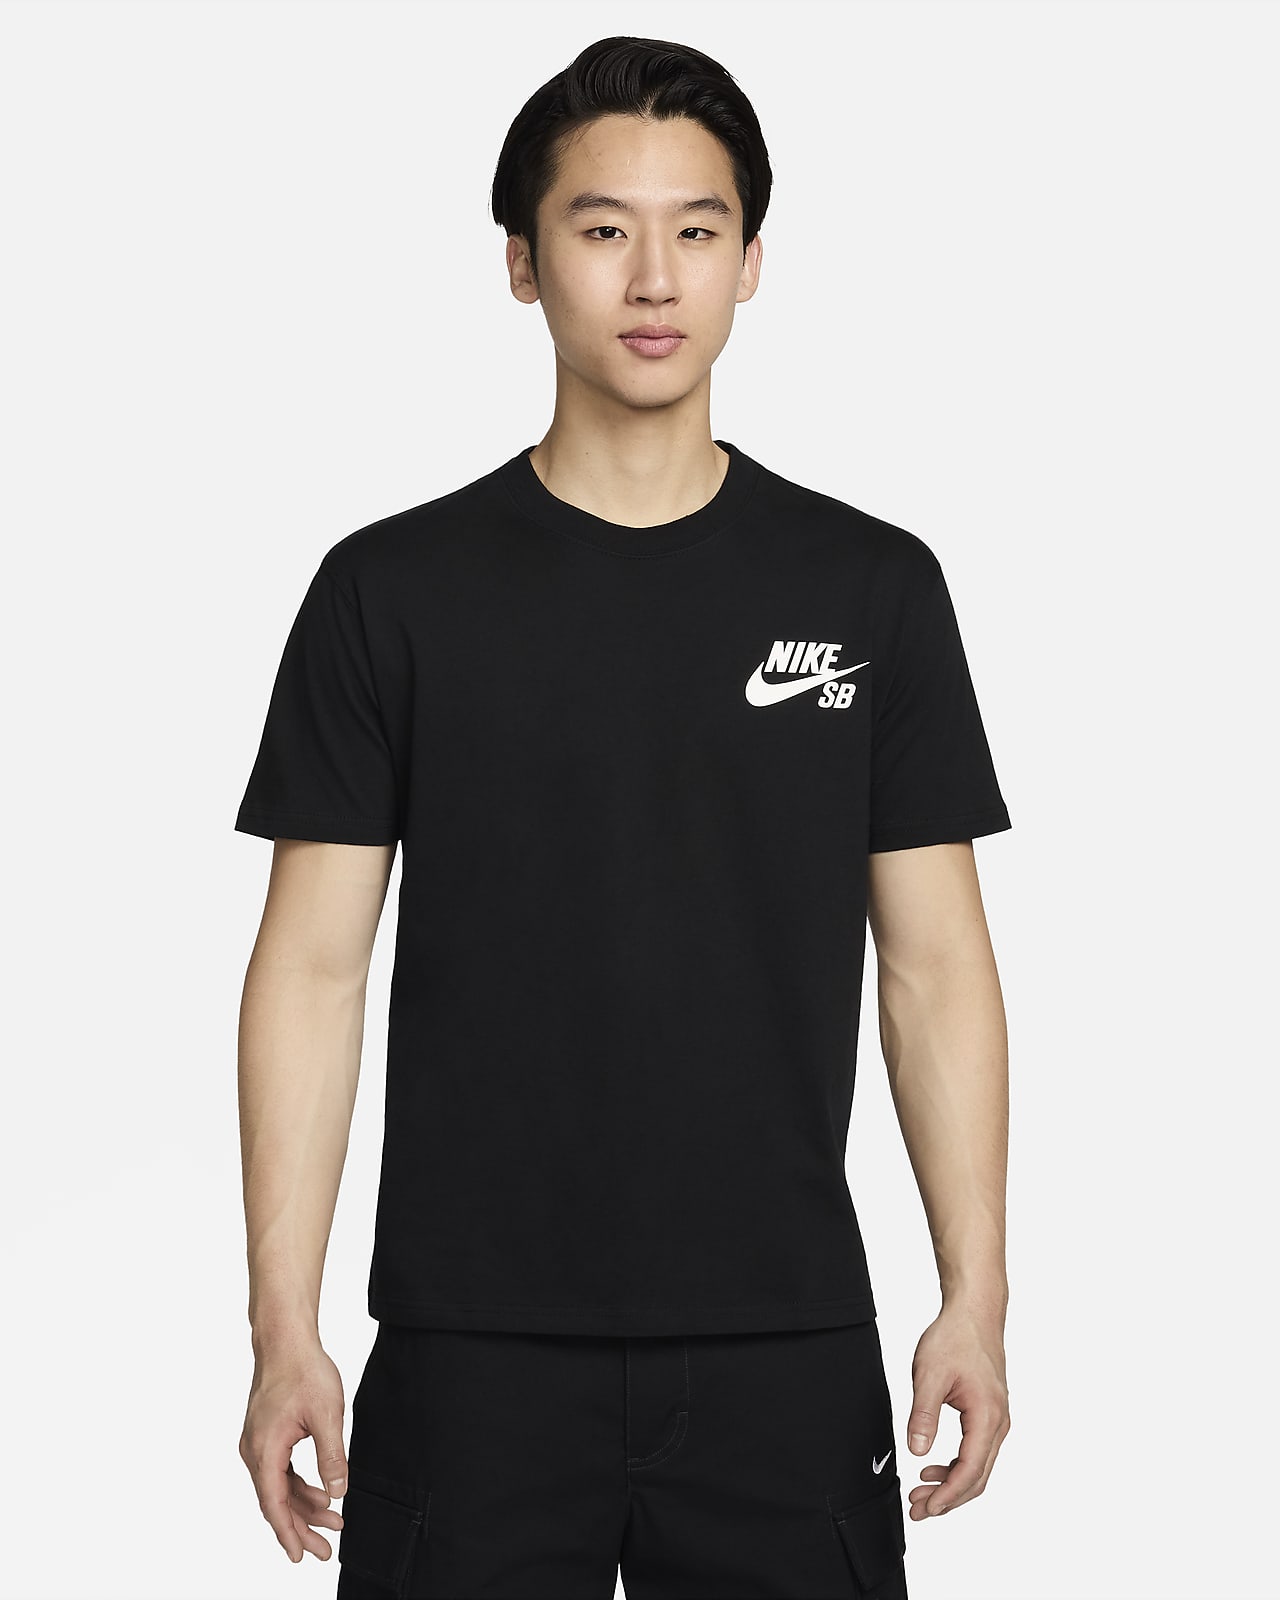 เสื้อยืดสเก็ตบอร์ดมีโลโก้ Nike SB